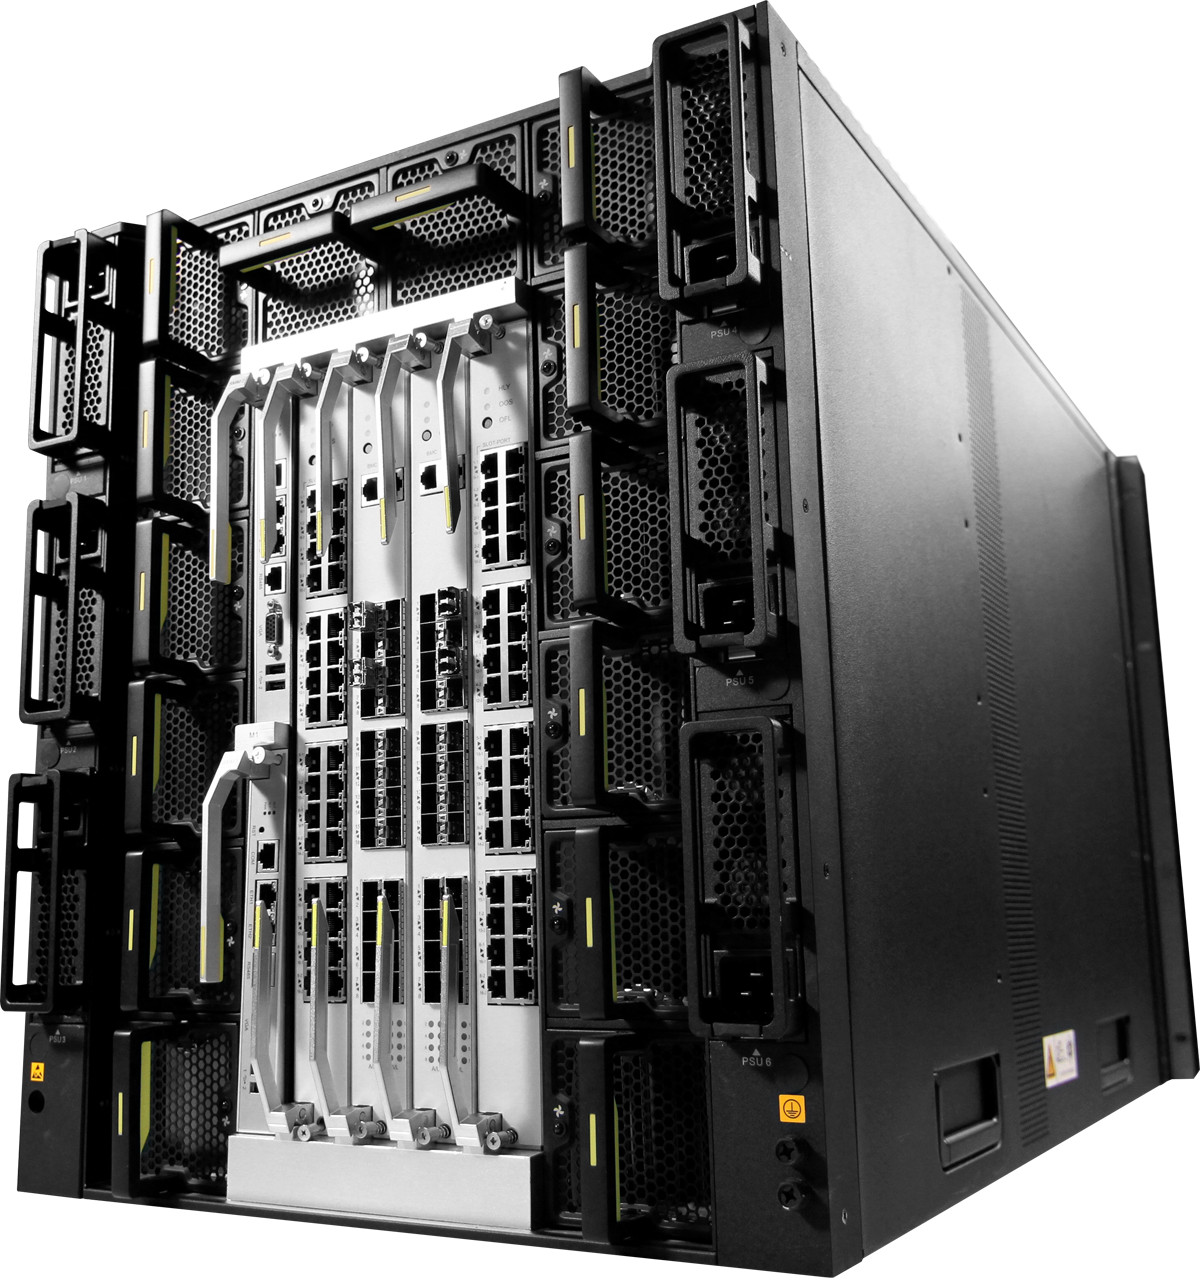 Network Blade Servers Hardware Computer Cases Server PNG Image